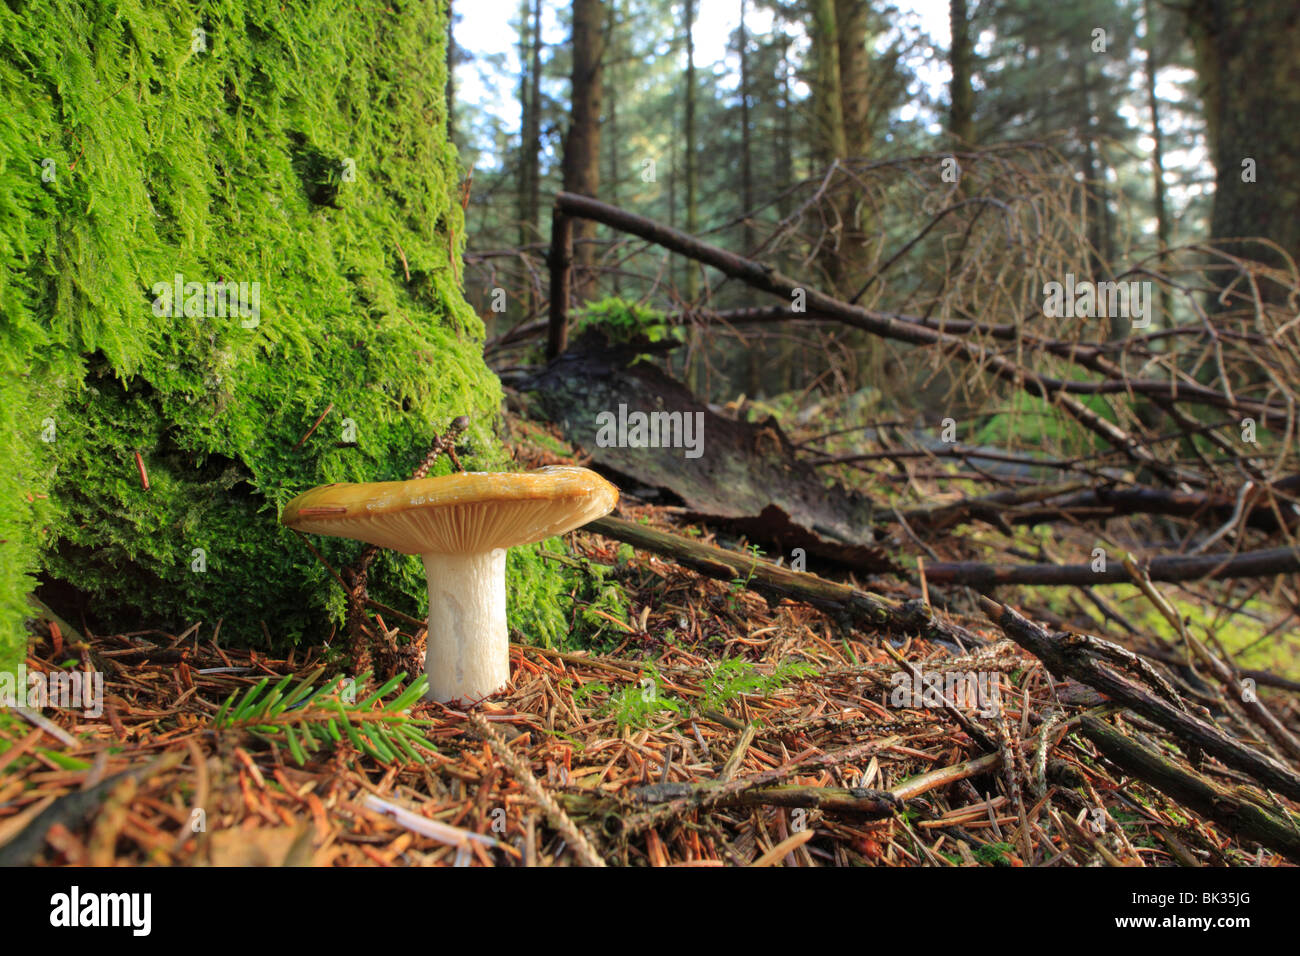 Funghi Russula sp.) la fruttificazione sotto Sitka Spruce alberi in una piantagione. Powys, Galles. Foto Stock